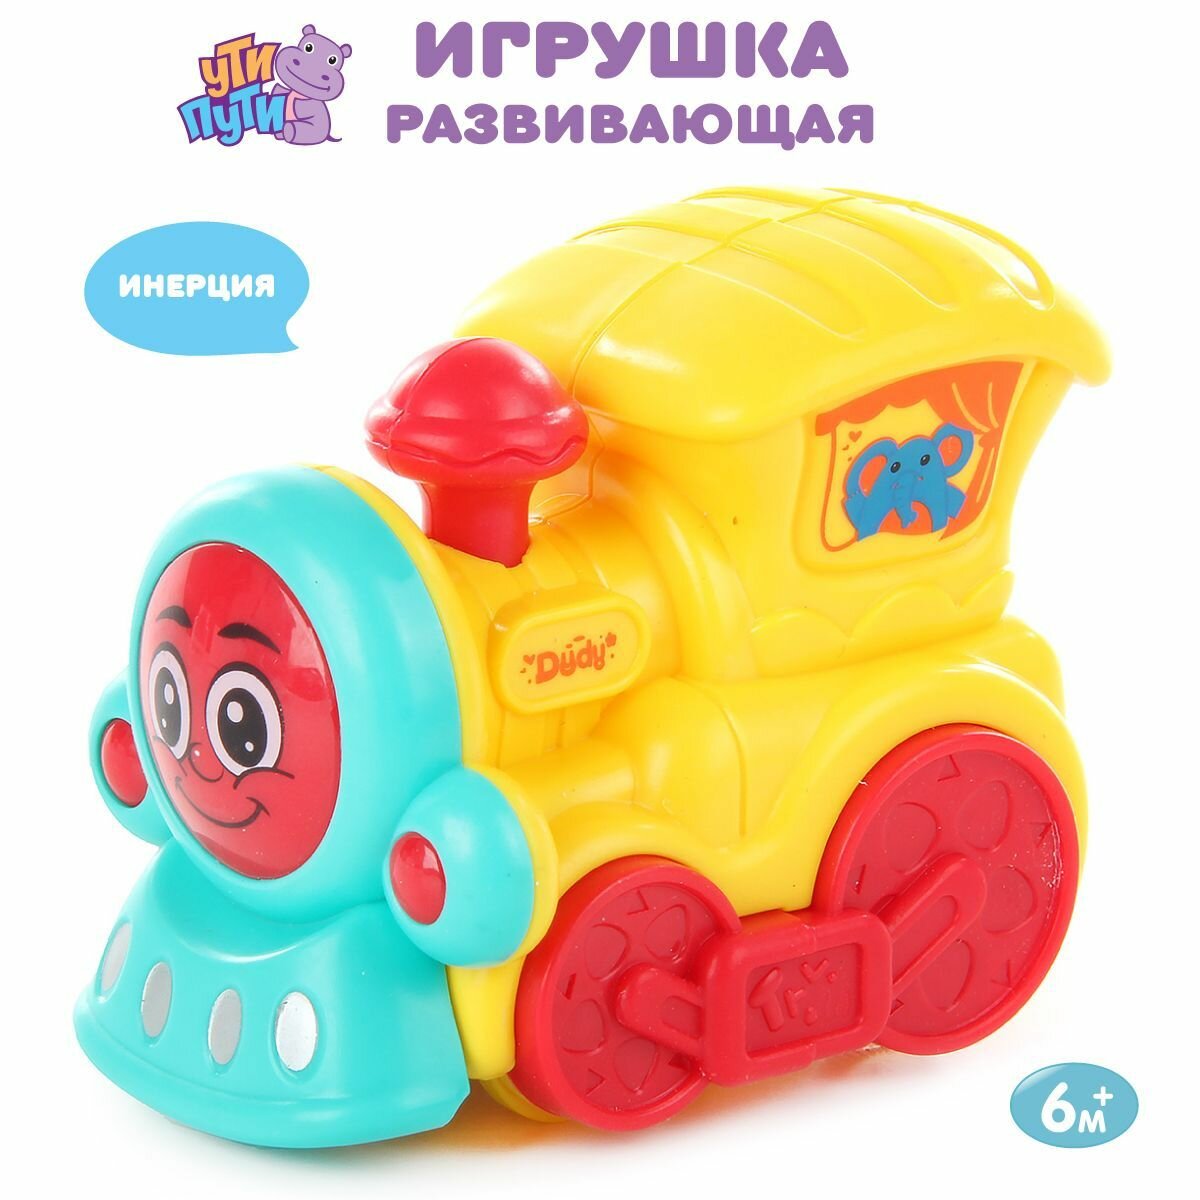 Детская развивающая игрушка "Паровозик", Ути Пути / Игрушечный транспорт для малышей